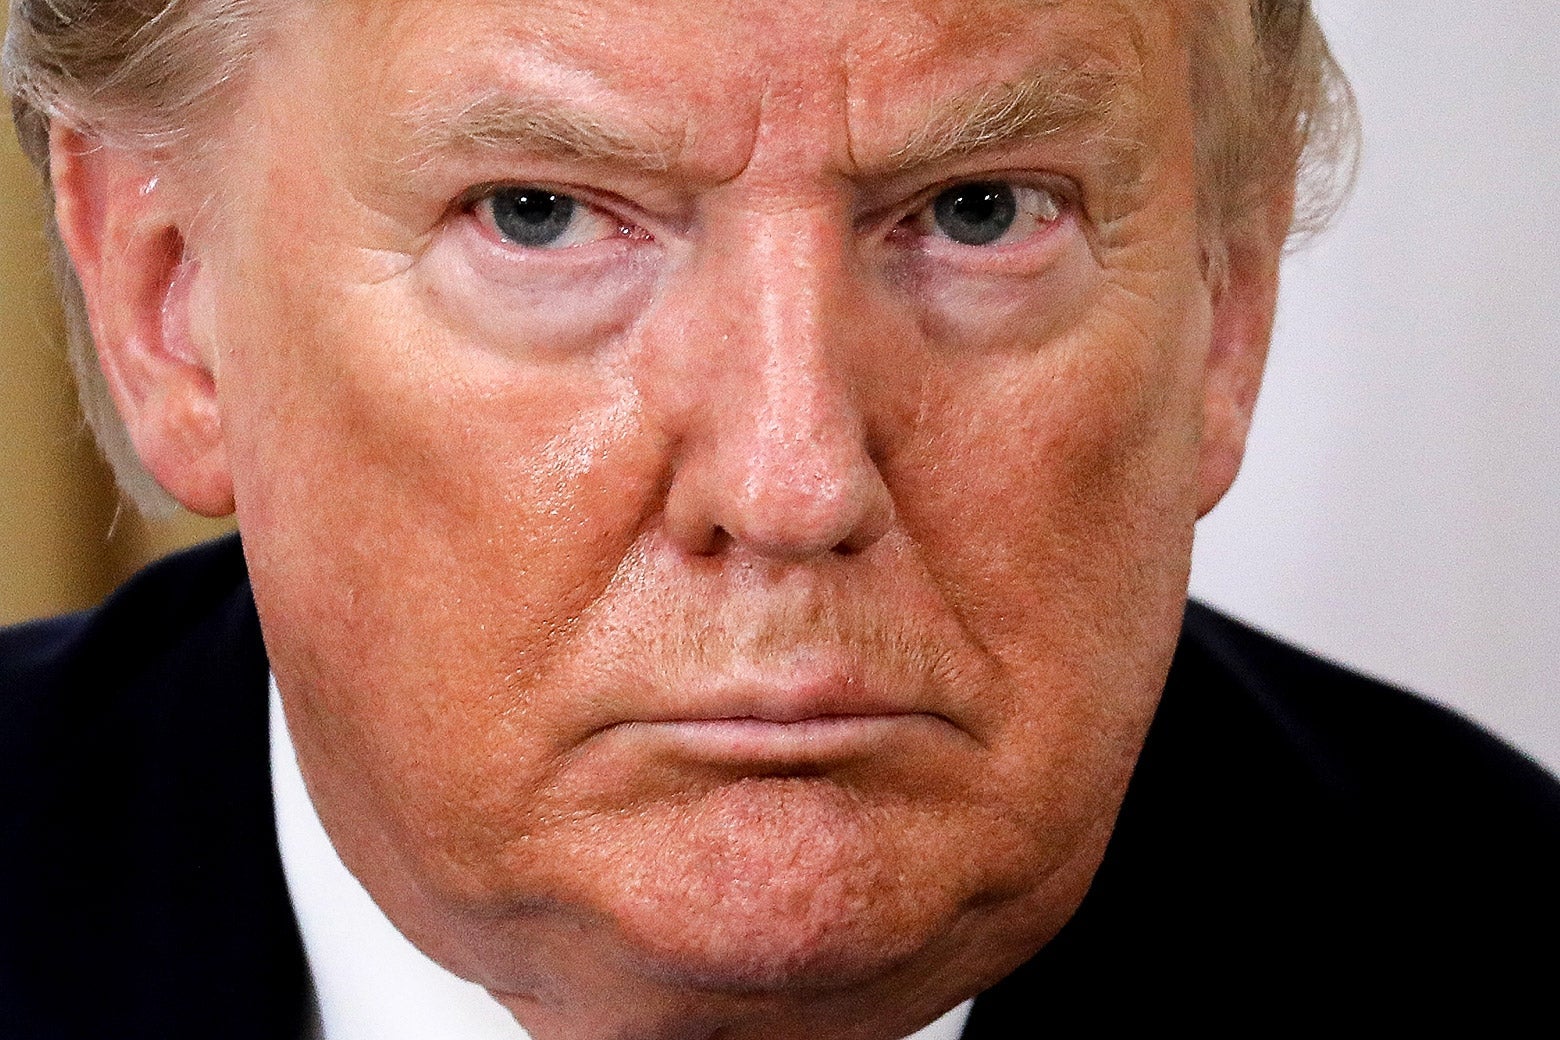 Close-up of Donald Trump’s face.